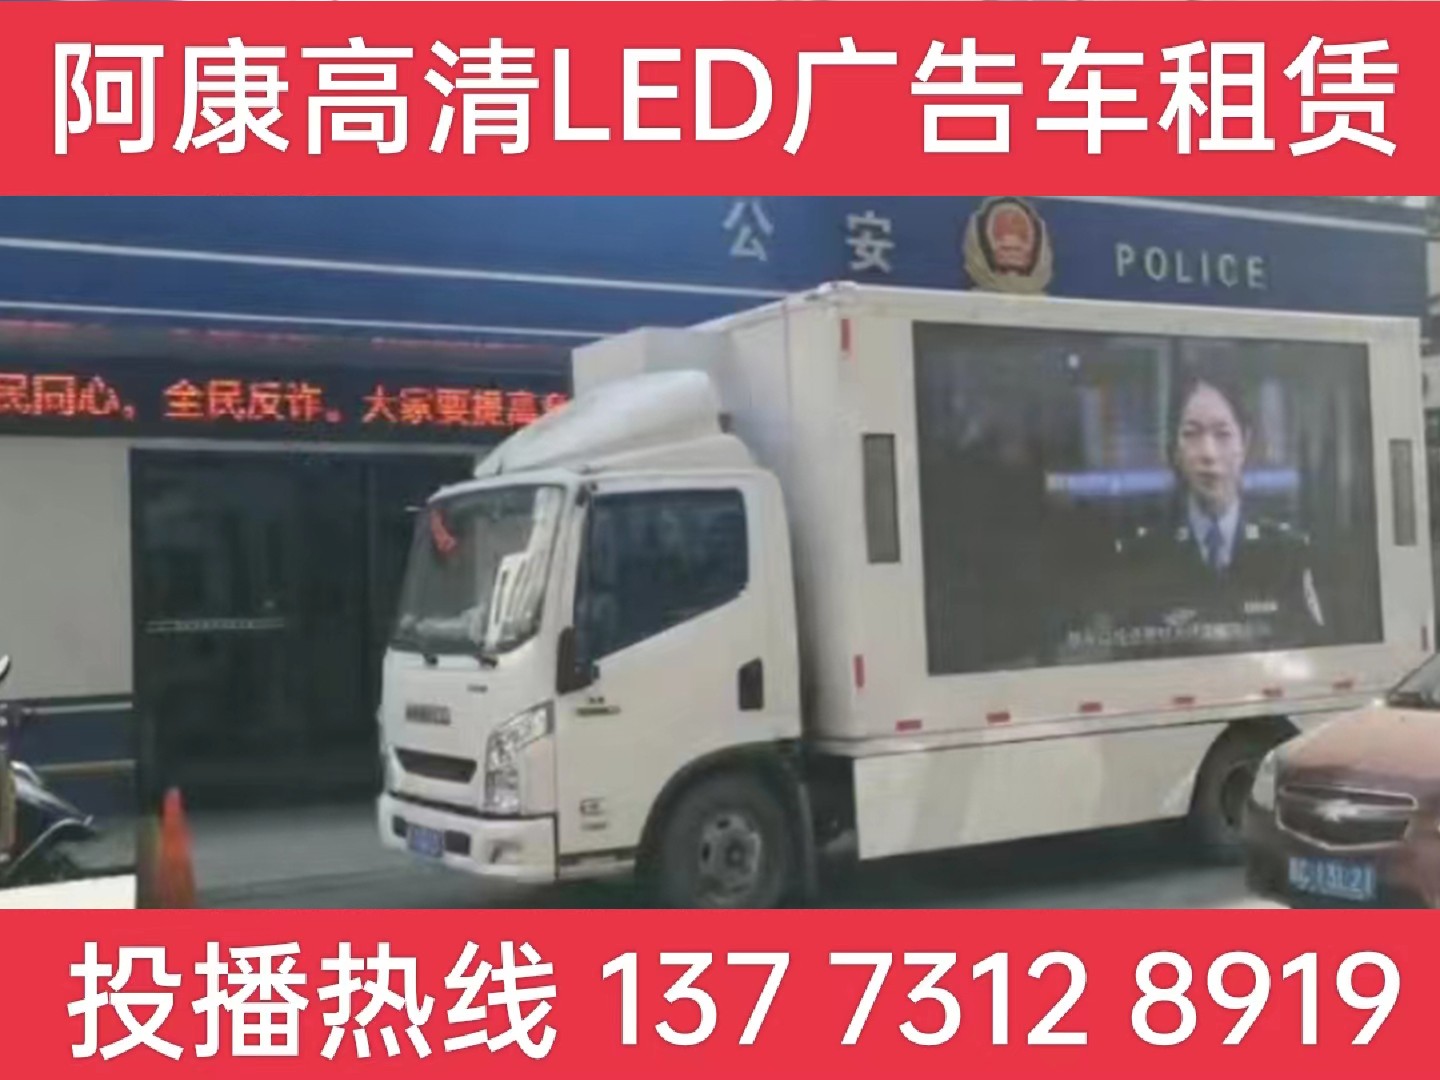 郎溪县LED广告车租赁-反诈宣传